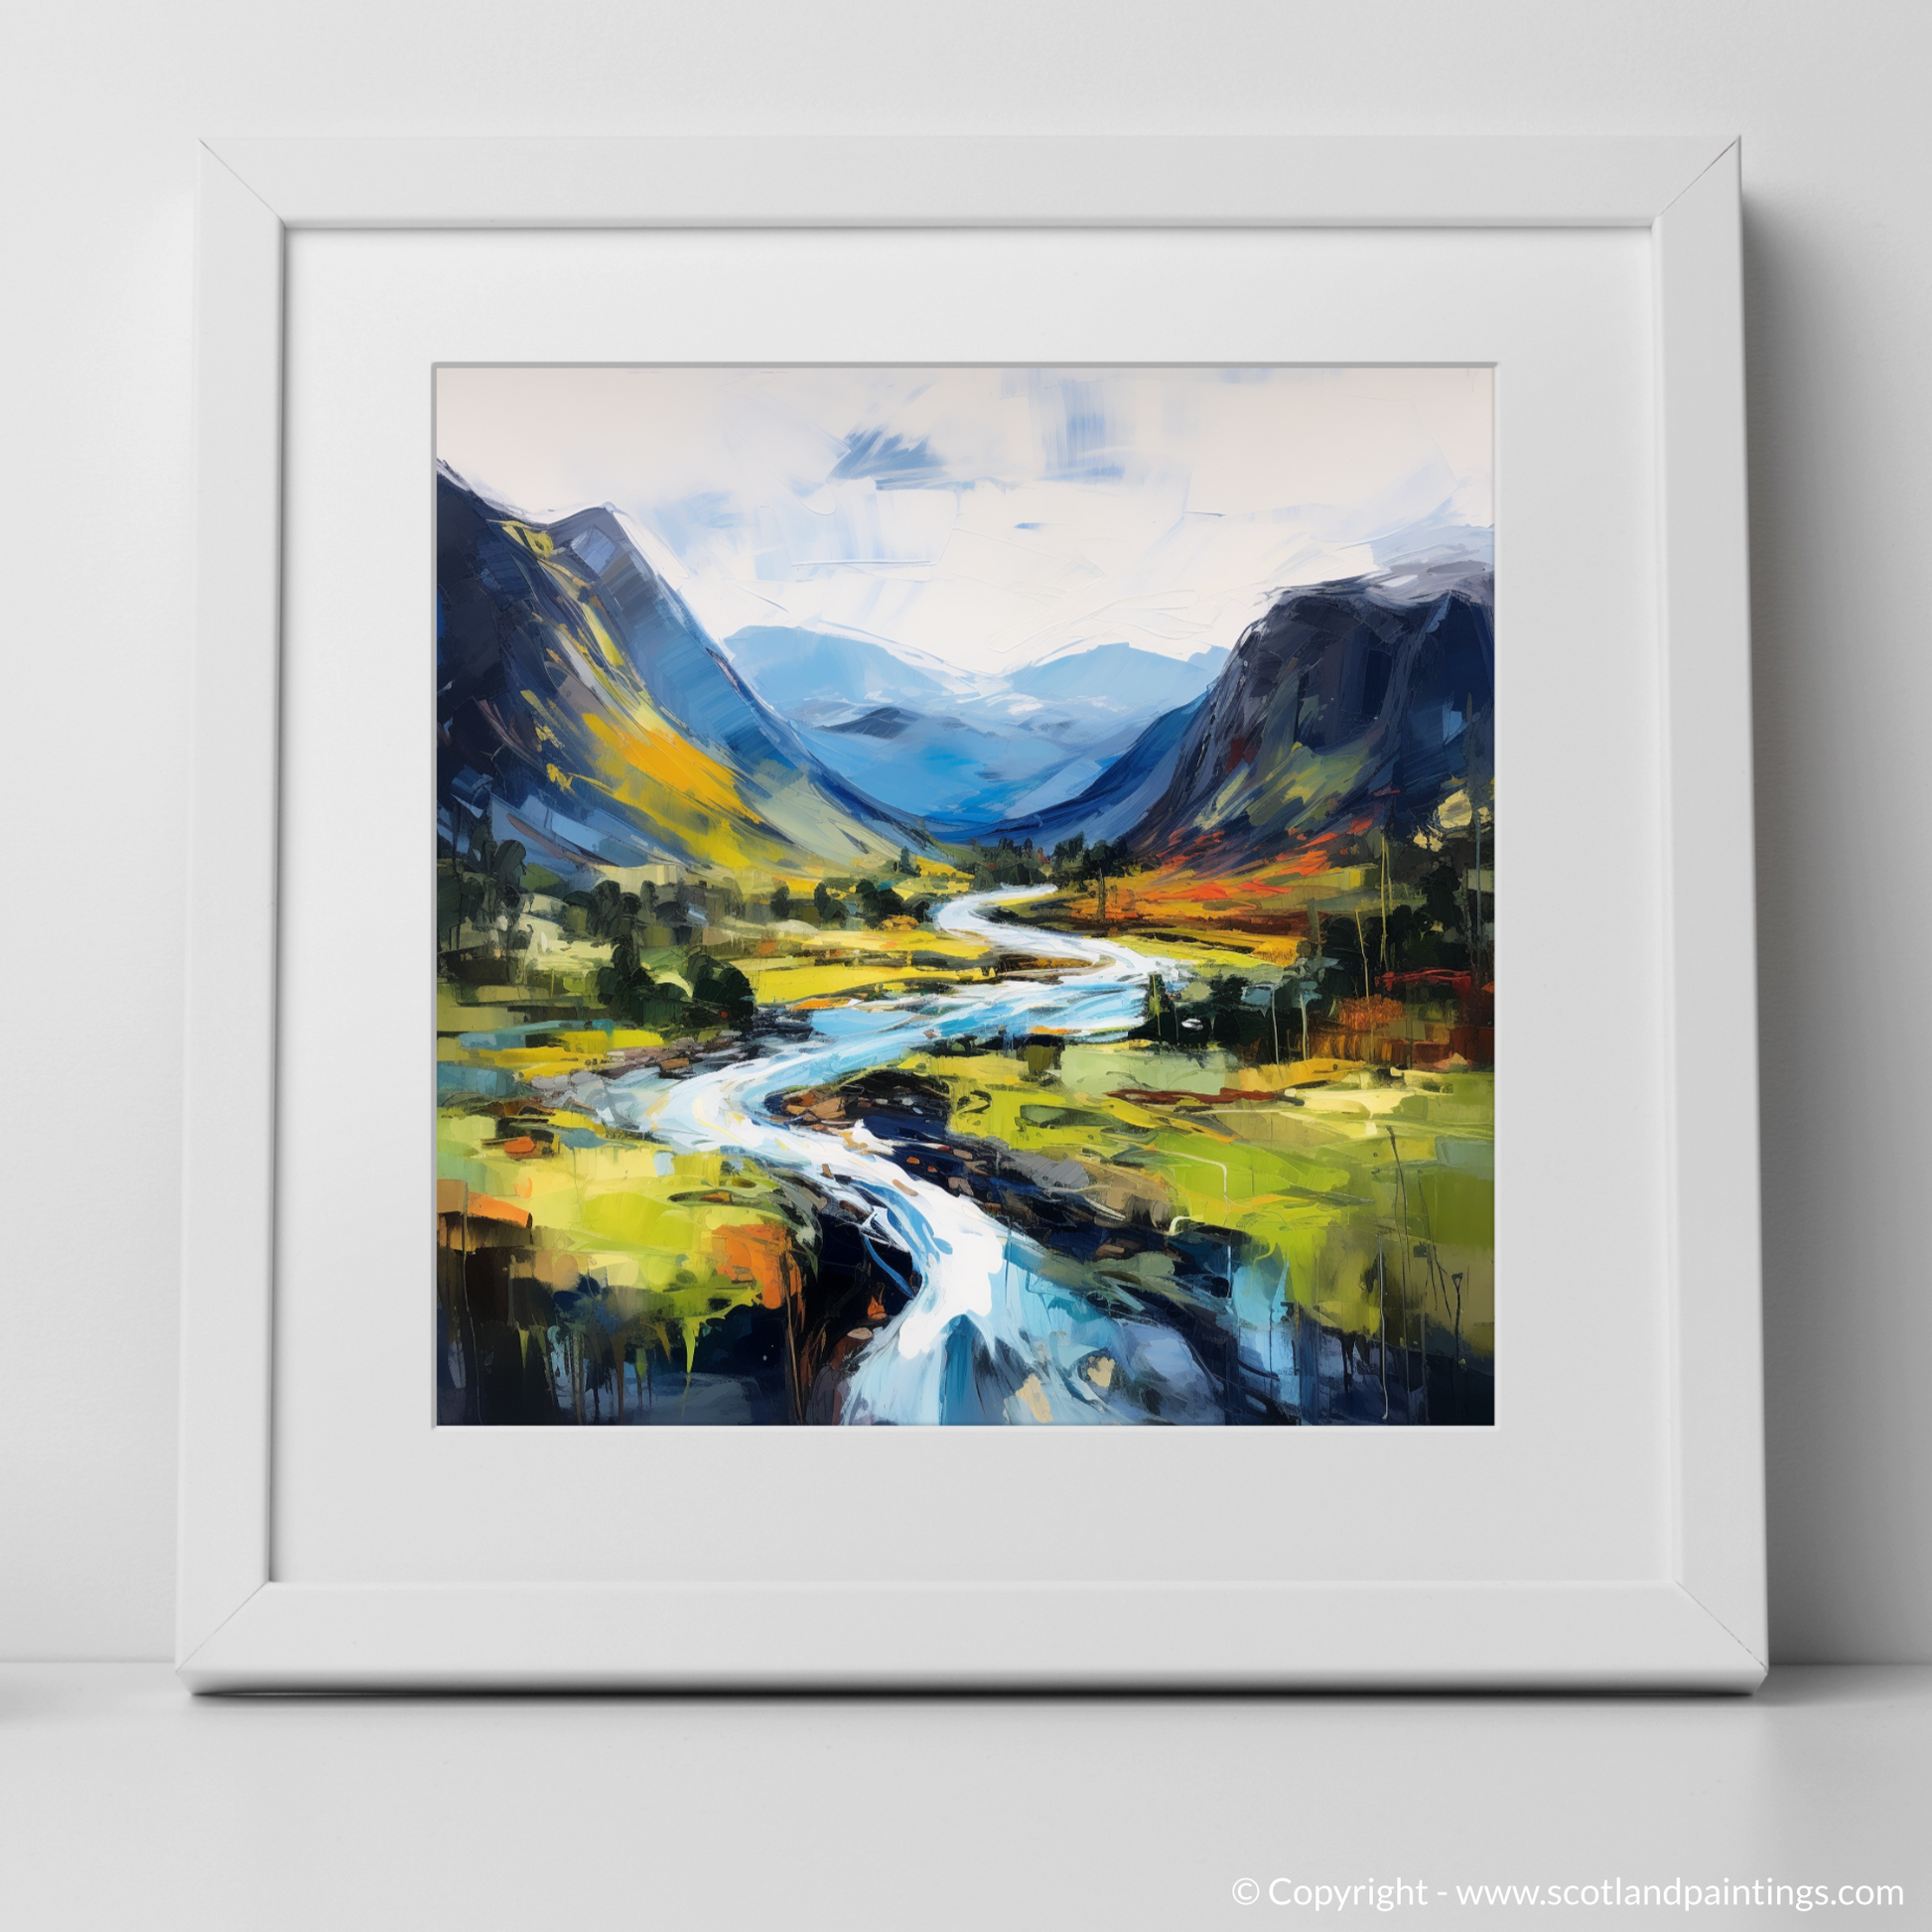 Art Print of Glen Strathfarrar, Highlands with a white frame